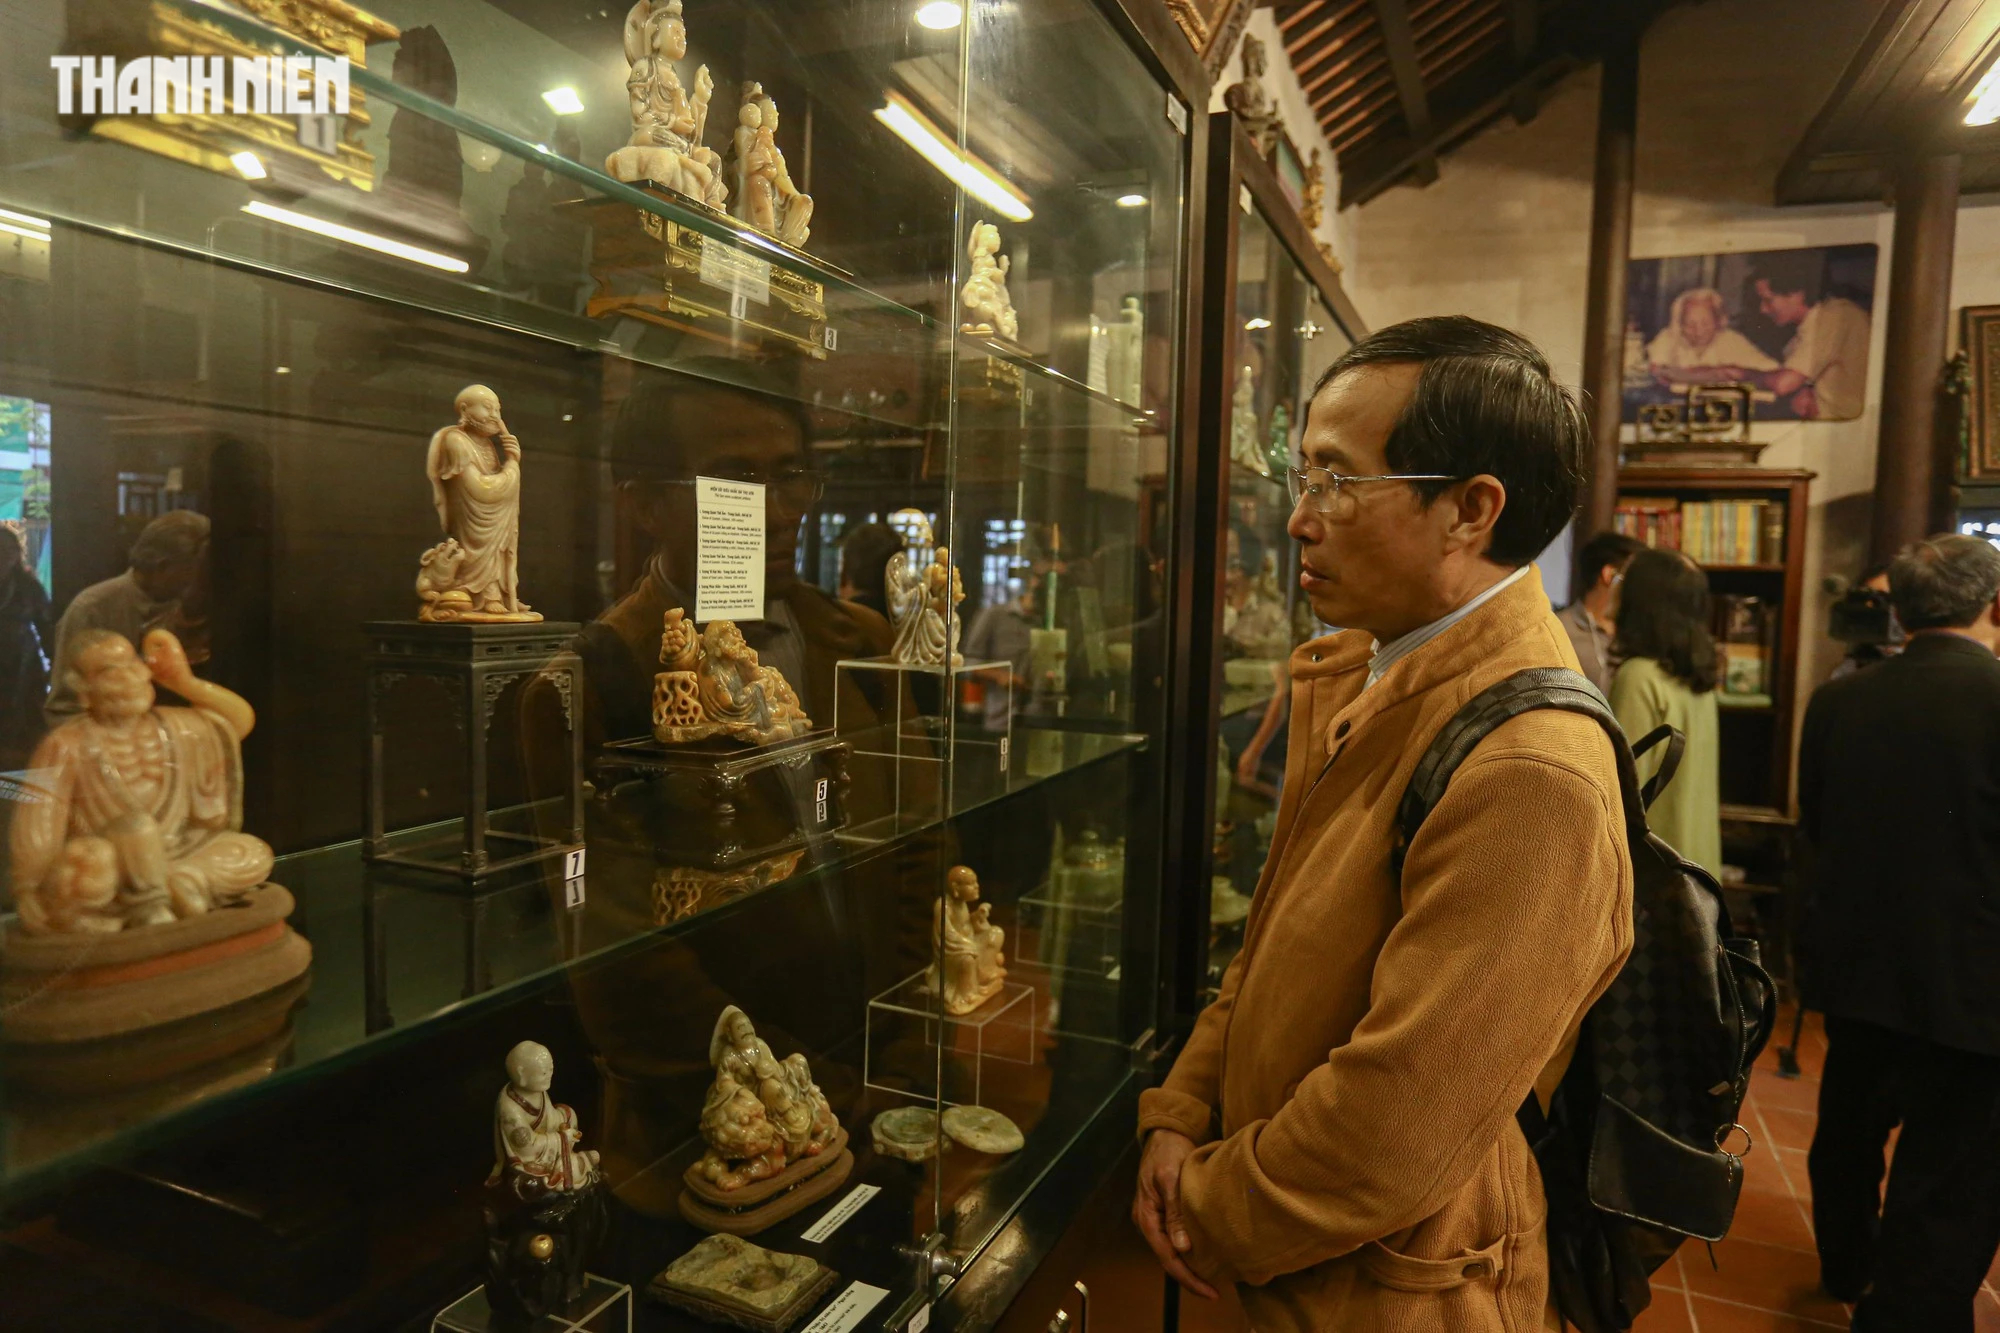 Chiêm ngưỡng hơn 70 món ngọc quý thời Nguyễn đang được trưng bày tại Huế - Ảnh 10.